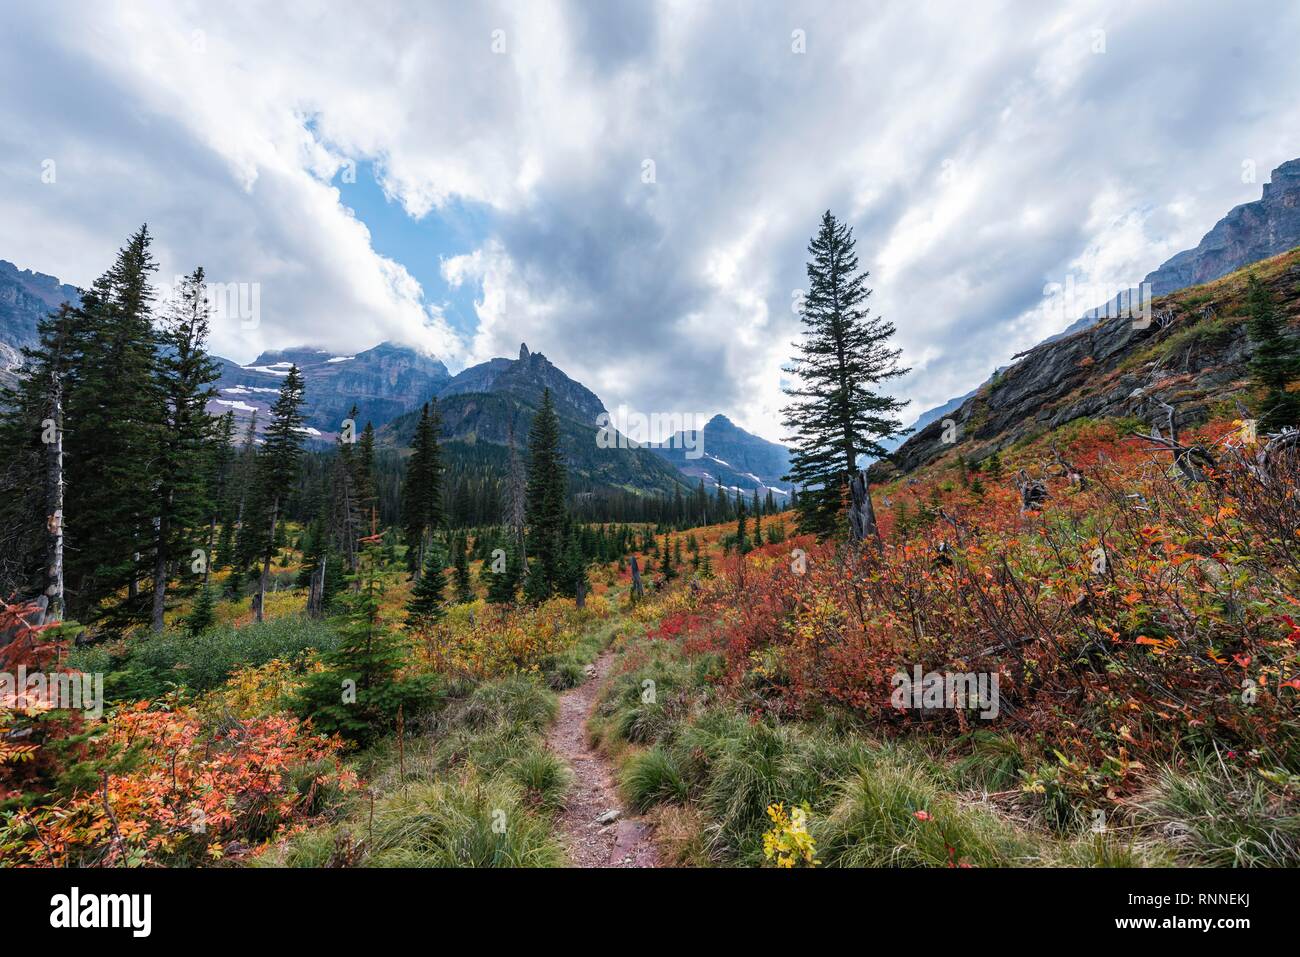 Sentier de randonnée pédestre à travers des paysages de montagne à l'automne à deux le lac Medicine, Glacier National Park, Montana, USA Banque D'Images